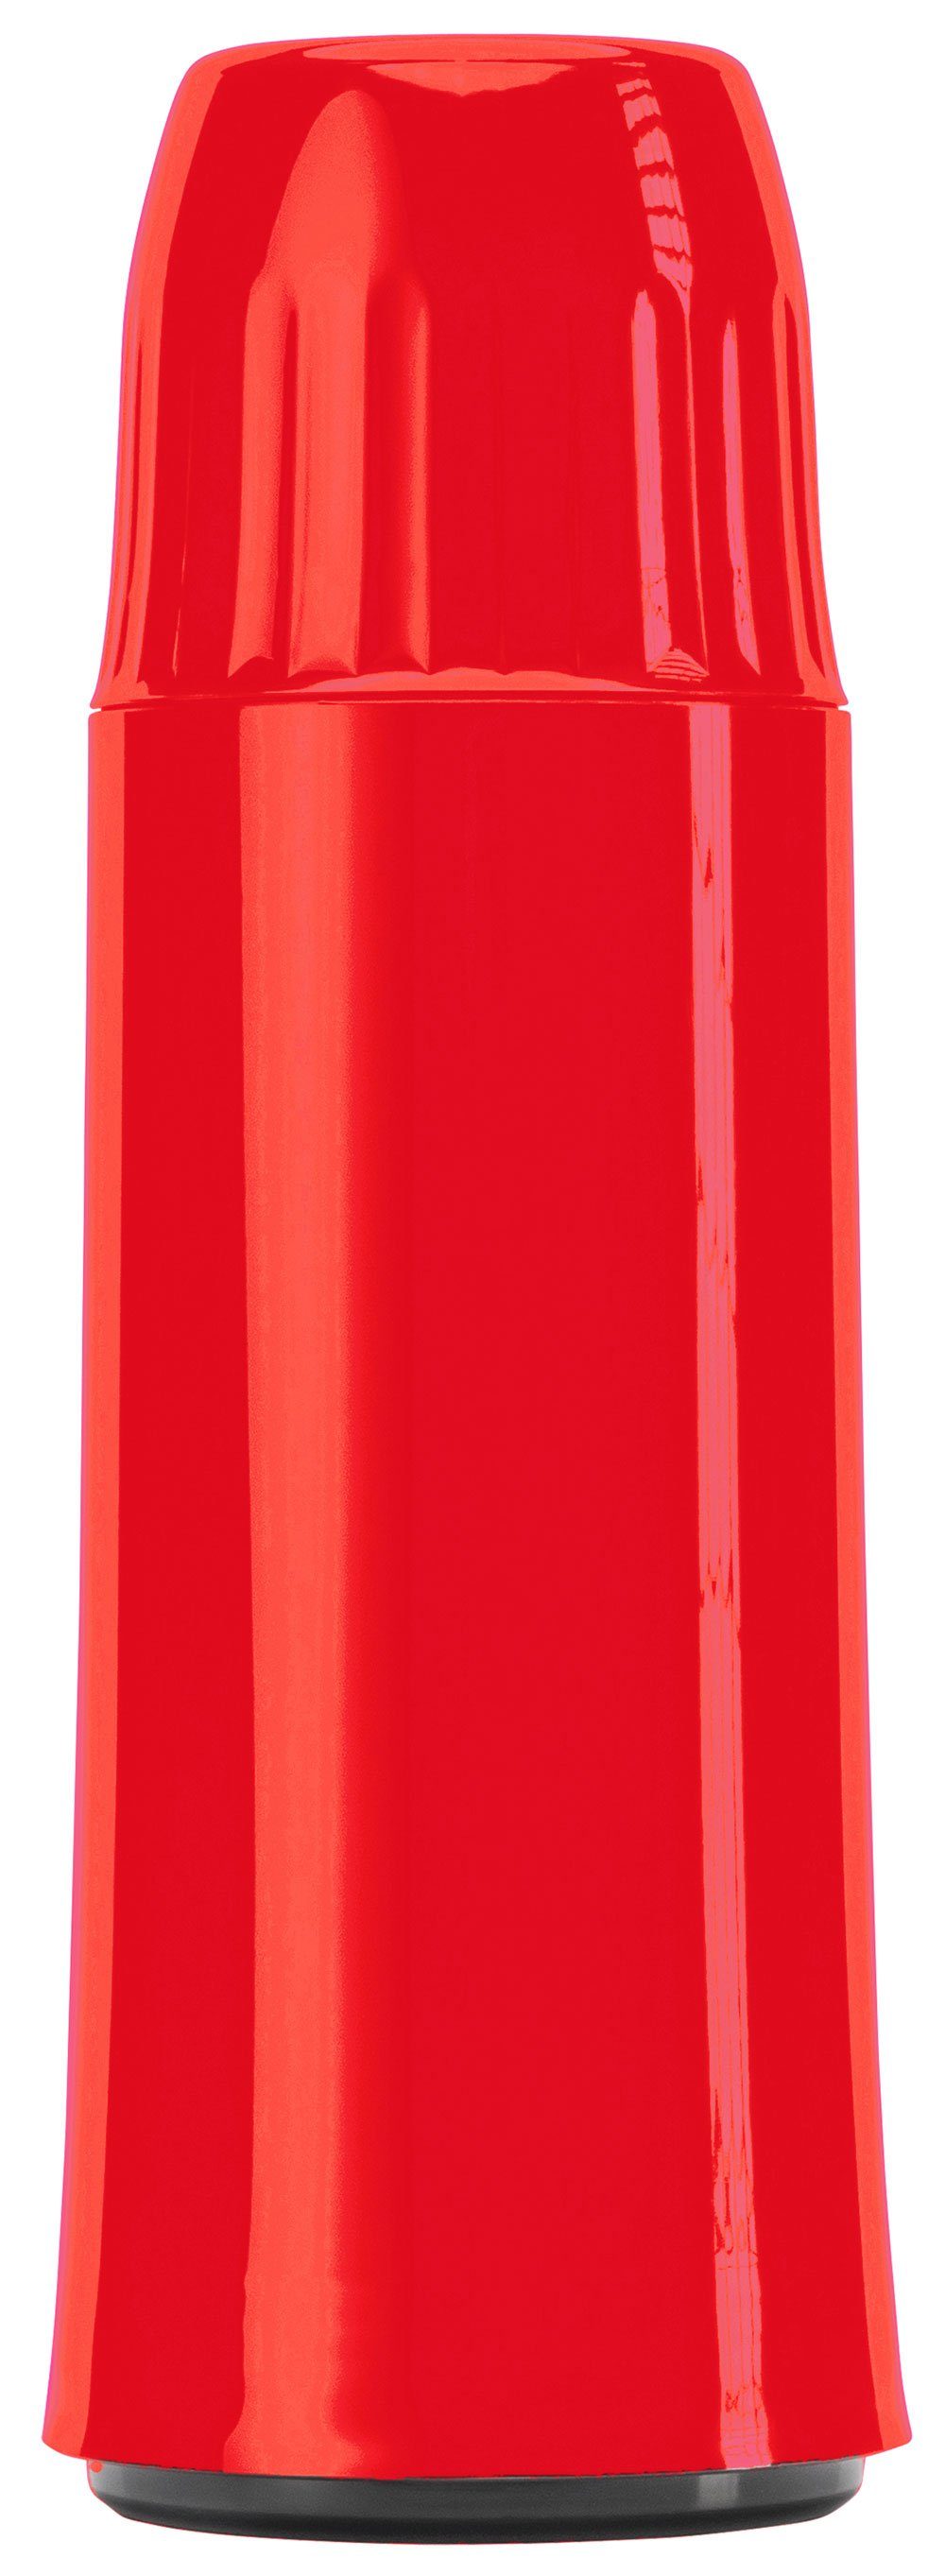 Helios Isolierflasche Rocket, aus Kunststoff